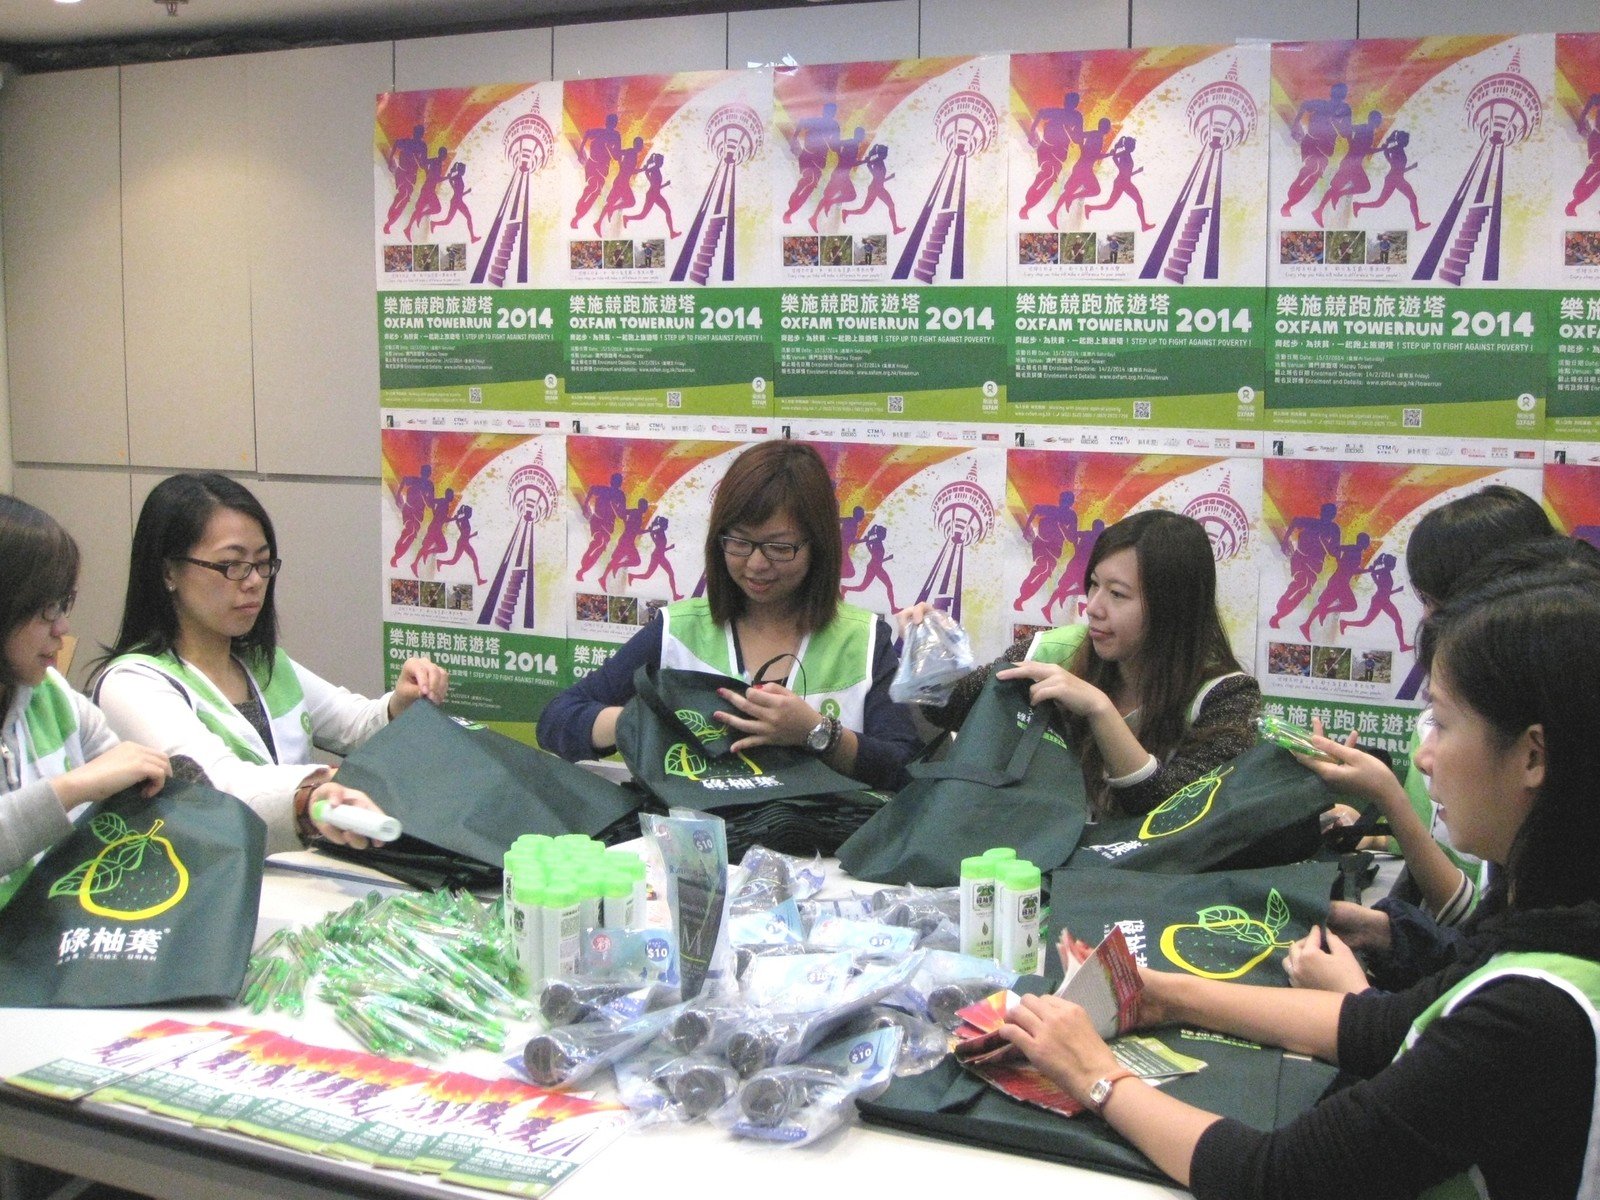 樂施會工作人員正為「樂施競跑旅遊塔2014」活動準備參加者的禮品包。